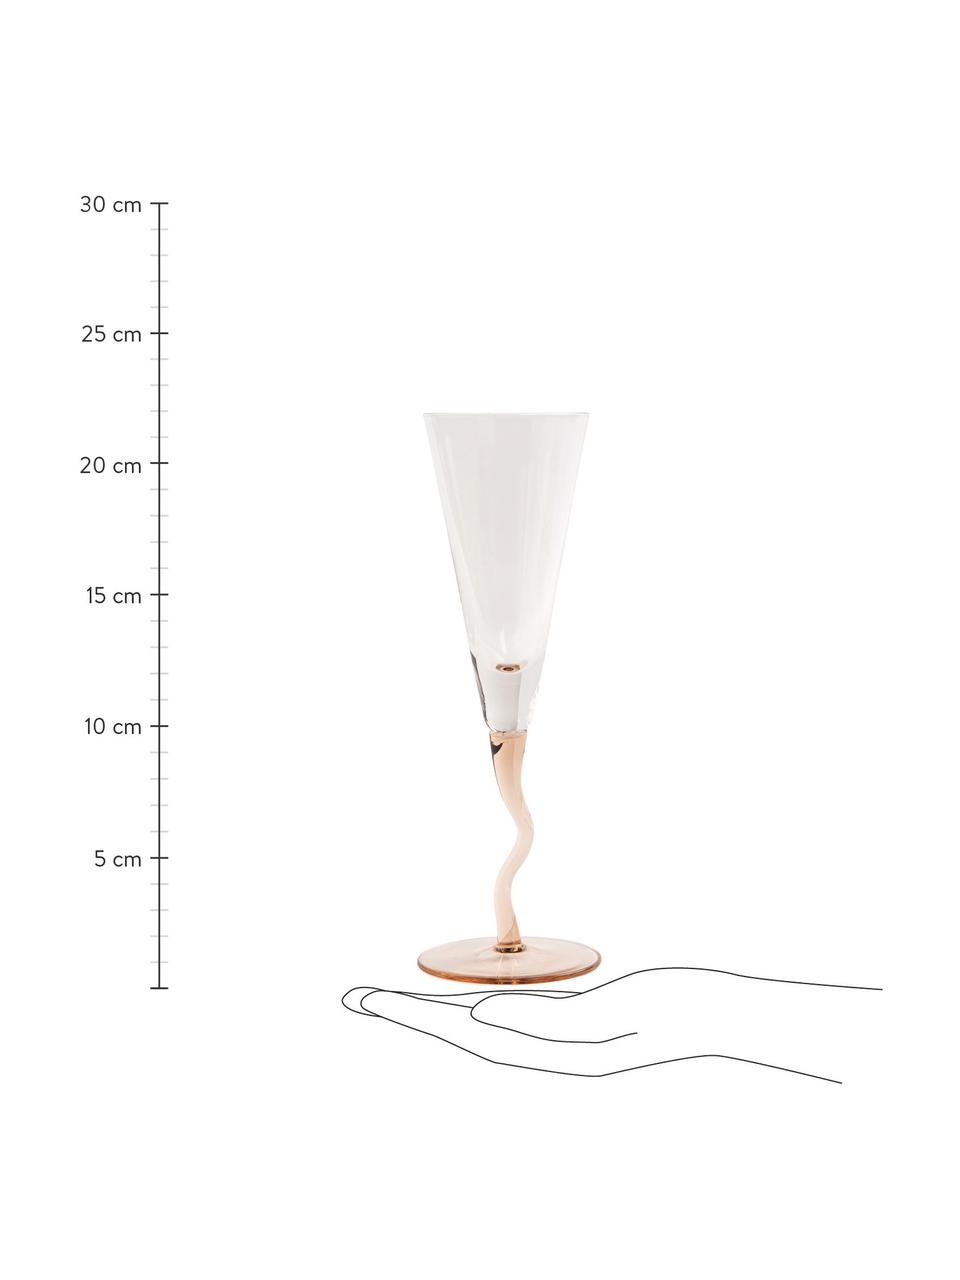 Krištáľové poháre na šampanské Curly, 2 ks, Sklo, Bledoružová, priehľadná, Ø 7 x V 22 cm, 100 ml